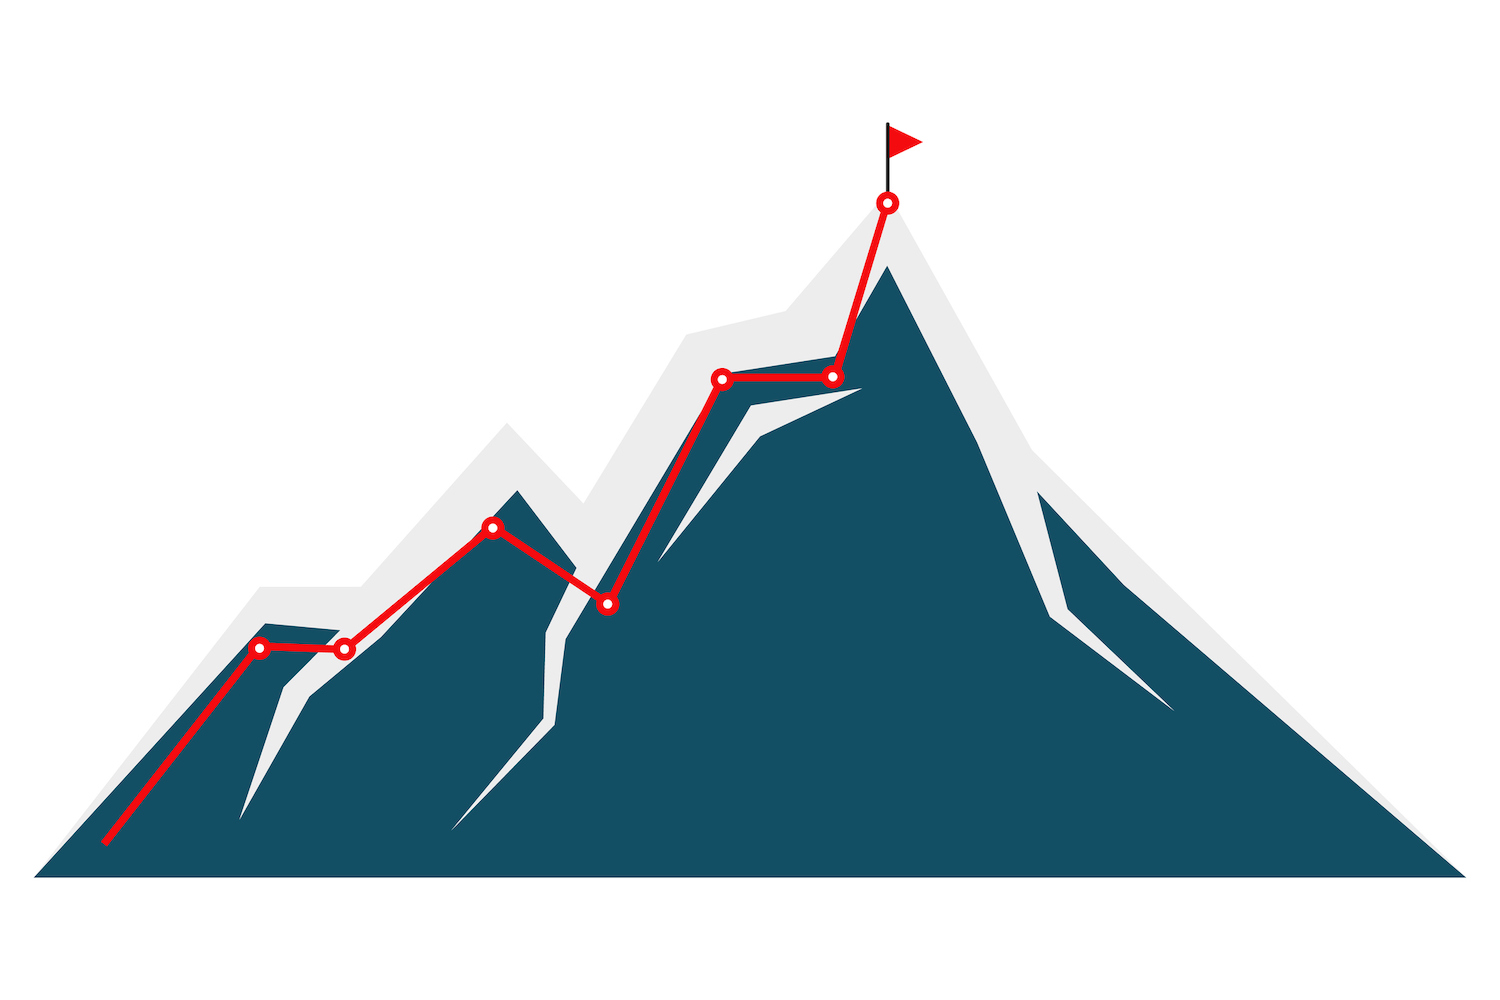 Ruta de escalada de montaña a la ilustración máxima.  Montaña azul oscuro sobre fondo blanco.  5 lecciones de crecimiento que aprendí al escalar de $0 a $1 millón ARR.